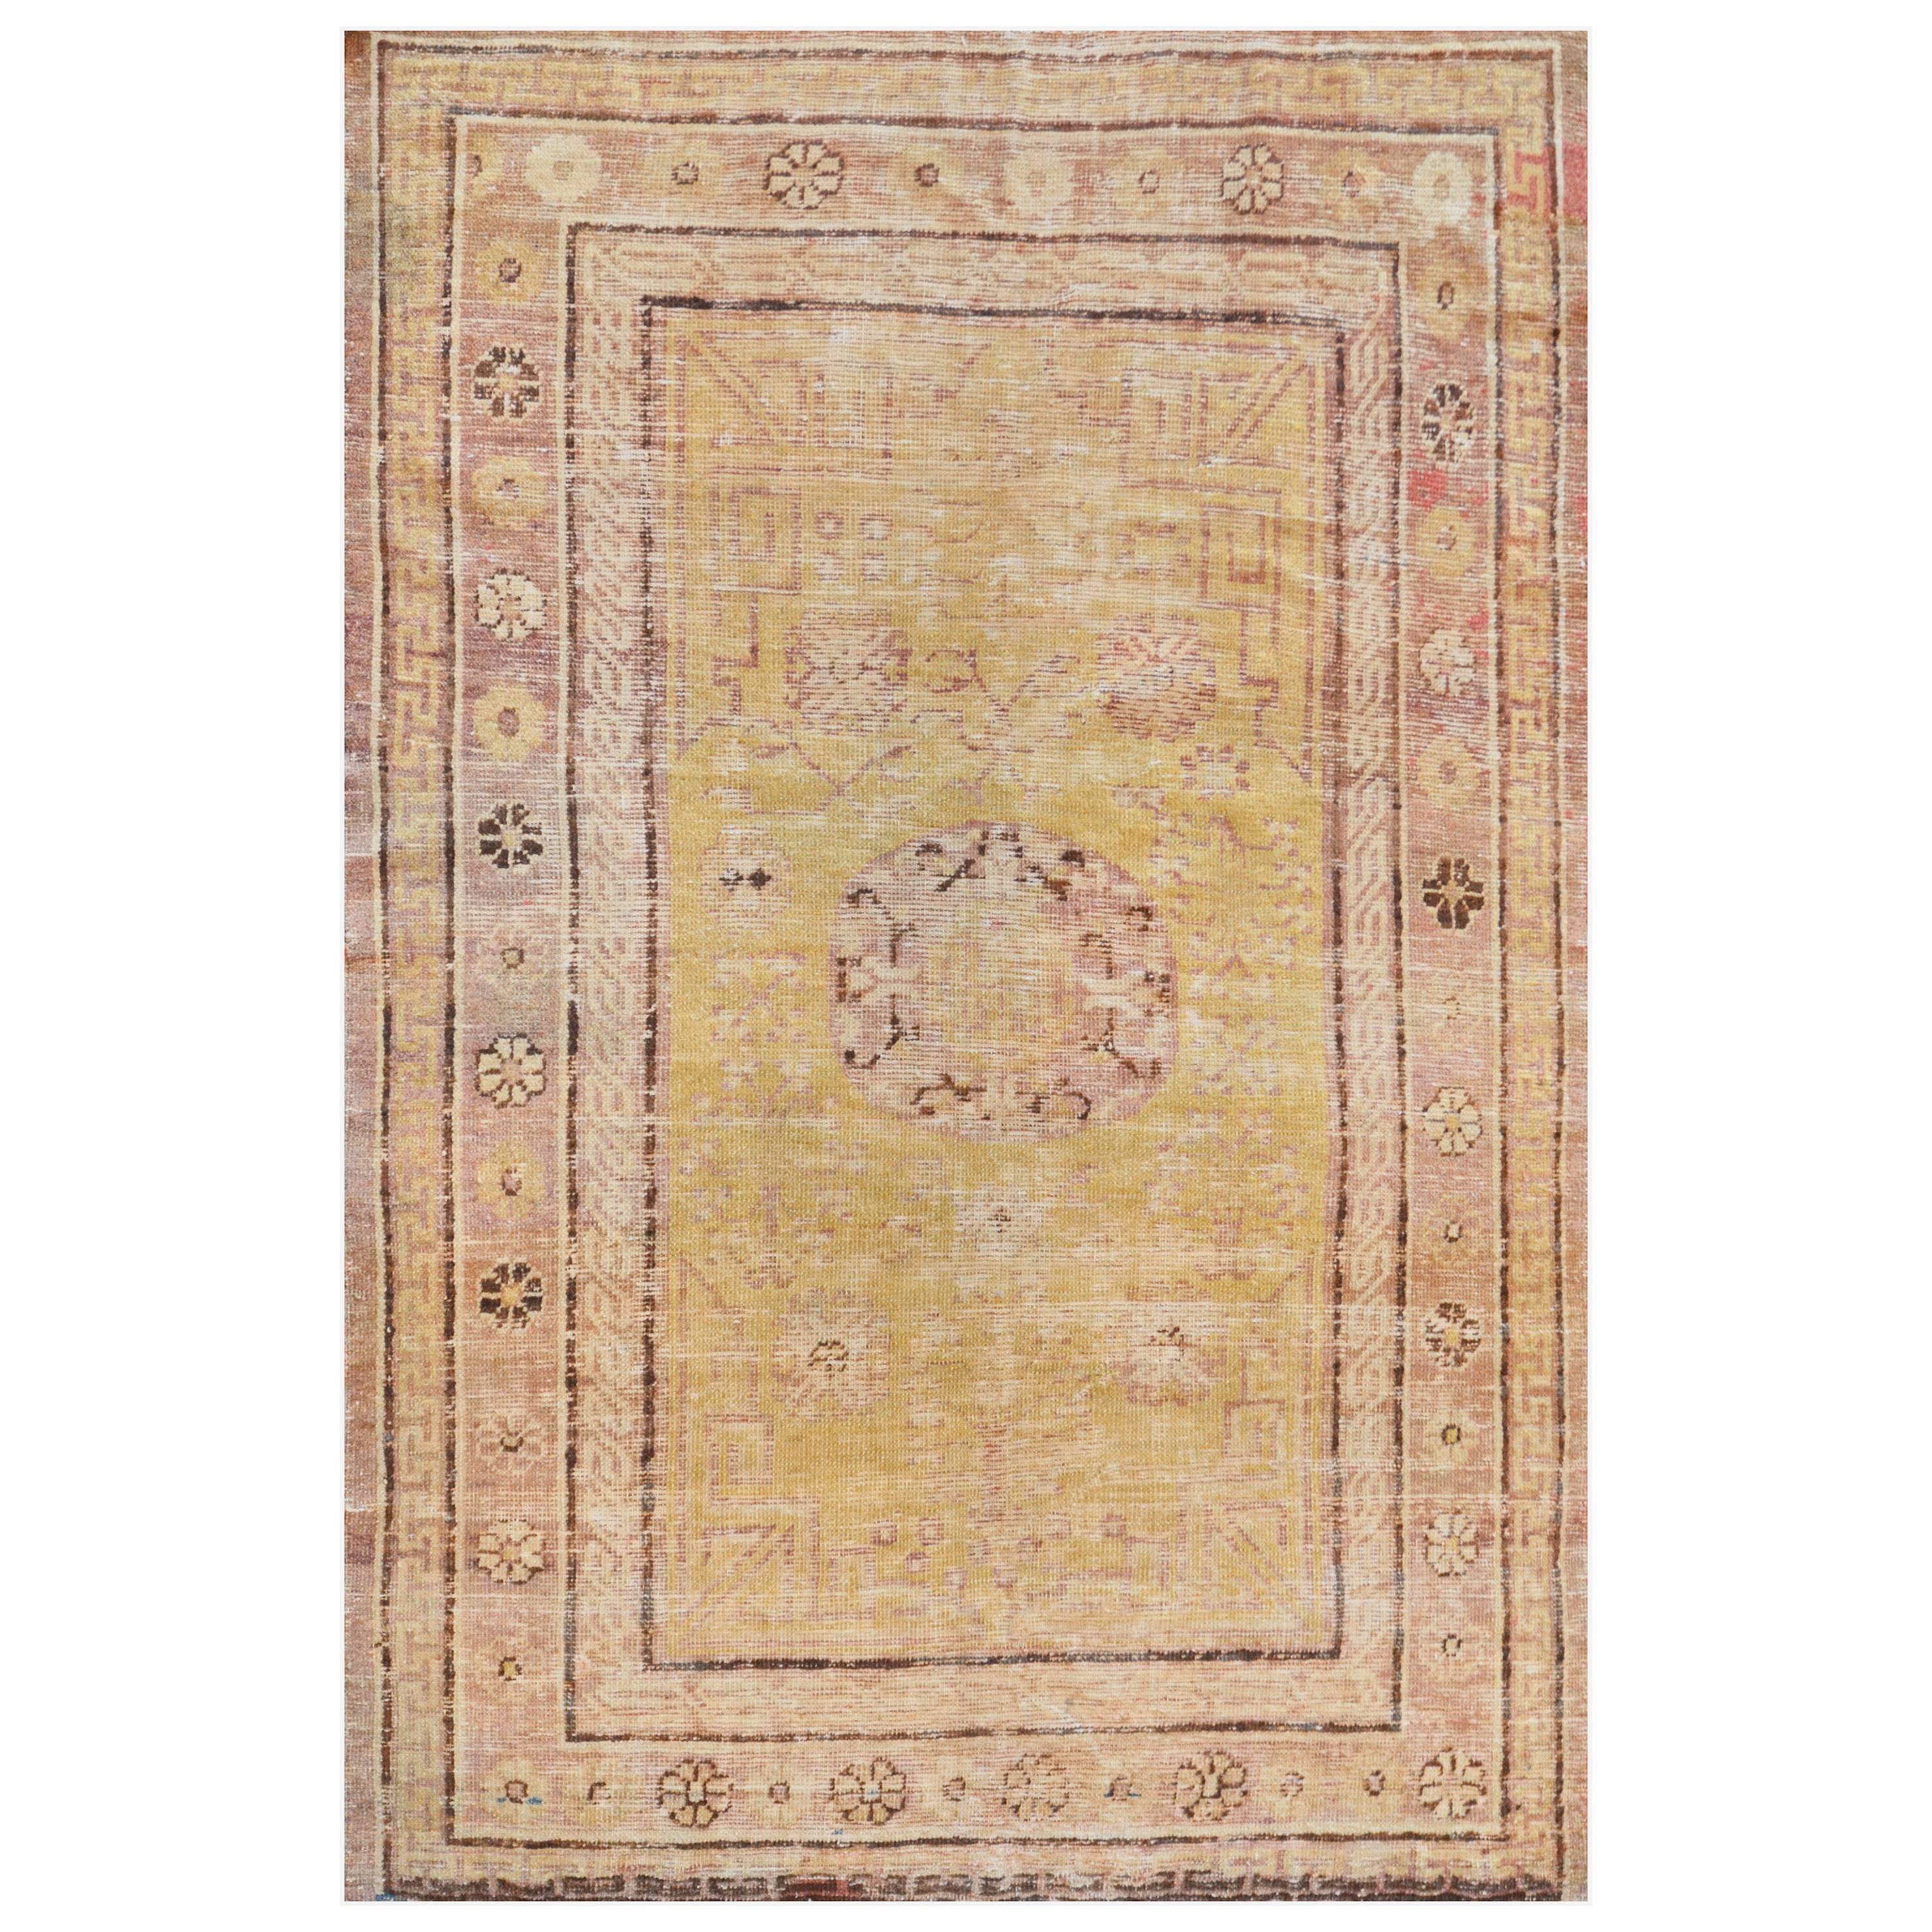 Khotan-Teppich aus Ostturkestan, spätes 19. Jahrhundert